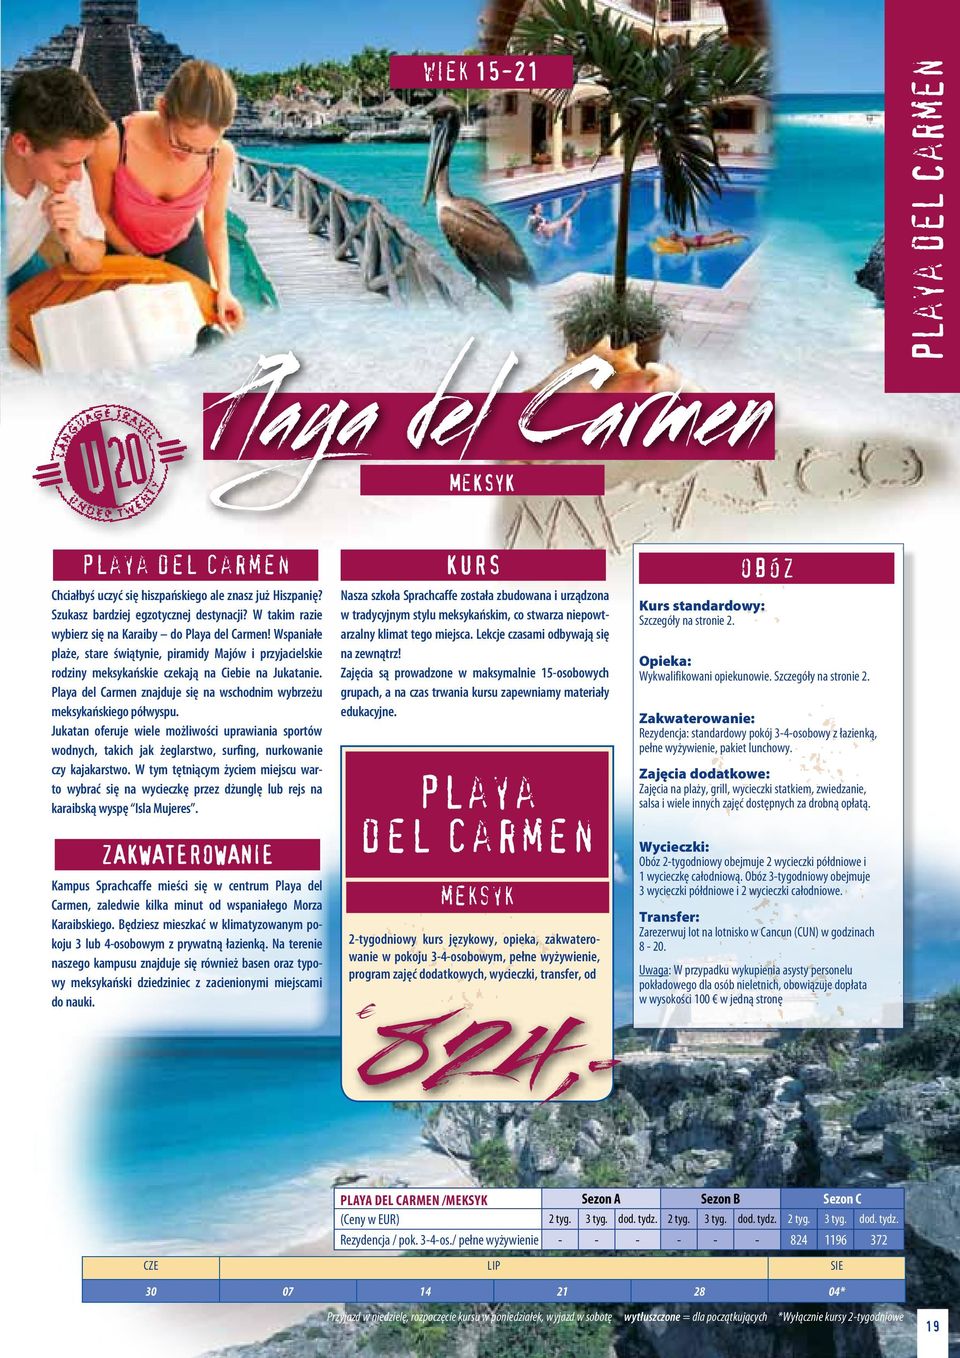 Playa del Carmen znajduje się na wschodnim wybrzeżu meksykańskiego półwyspu. Jukatan oferuje wiele możliwości uprawiania sportów wodnych, takich jak żeglarstwo, surfing, nurkowanie czy kajakarstwo.